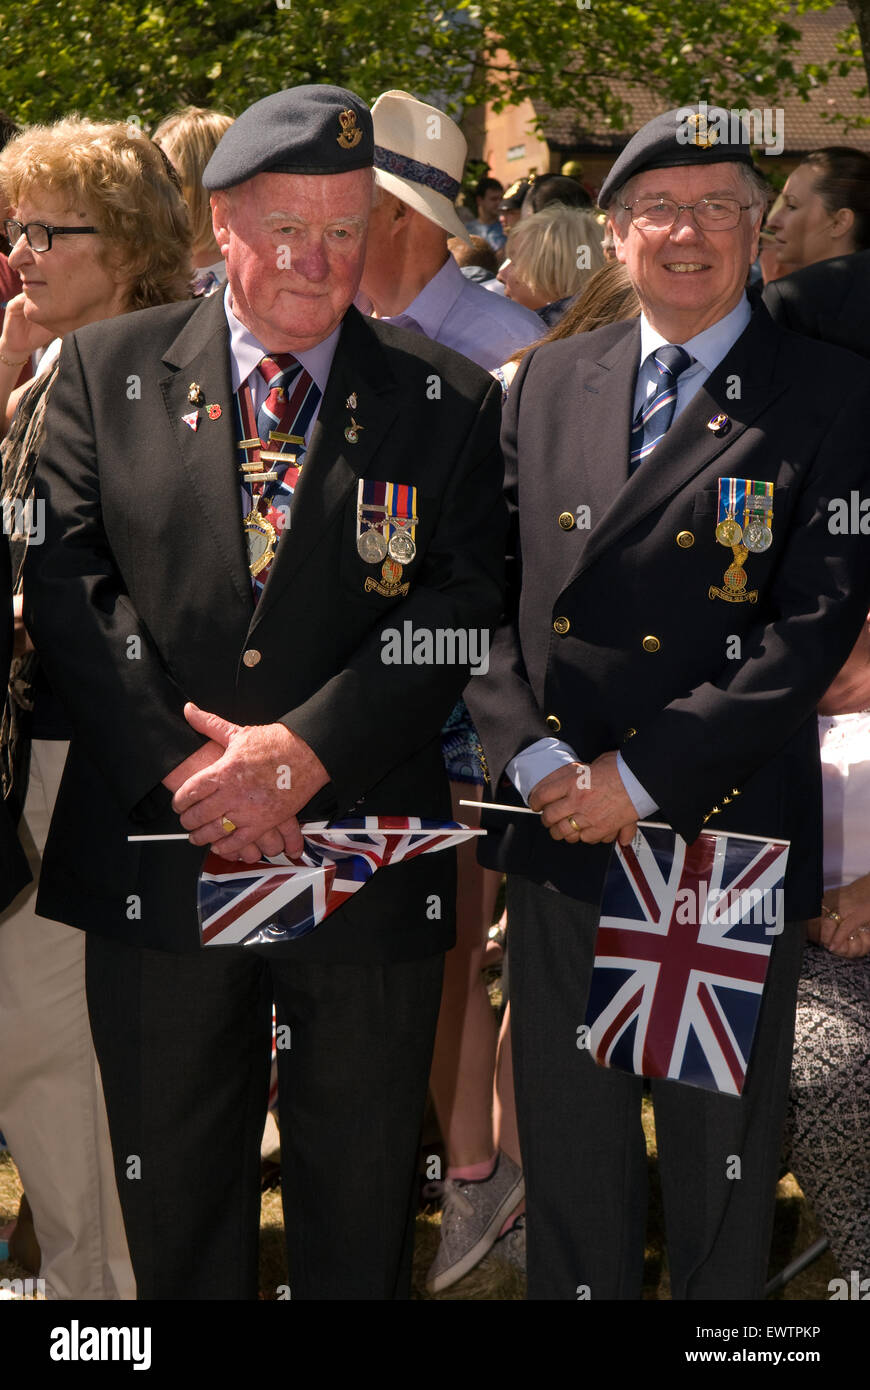 Le personnel militaire des anciens combattants participant à la revoir à la garnison Festival, Bordon, Hampshire, Royaume-Uni. Samedi 27 juin 2015. Banque D'Images